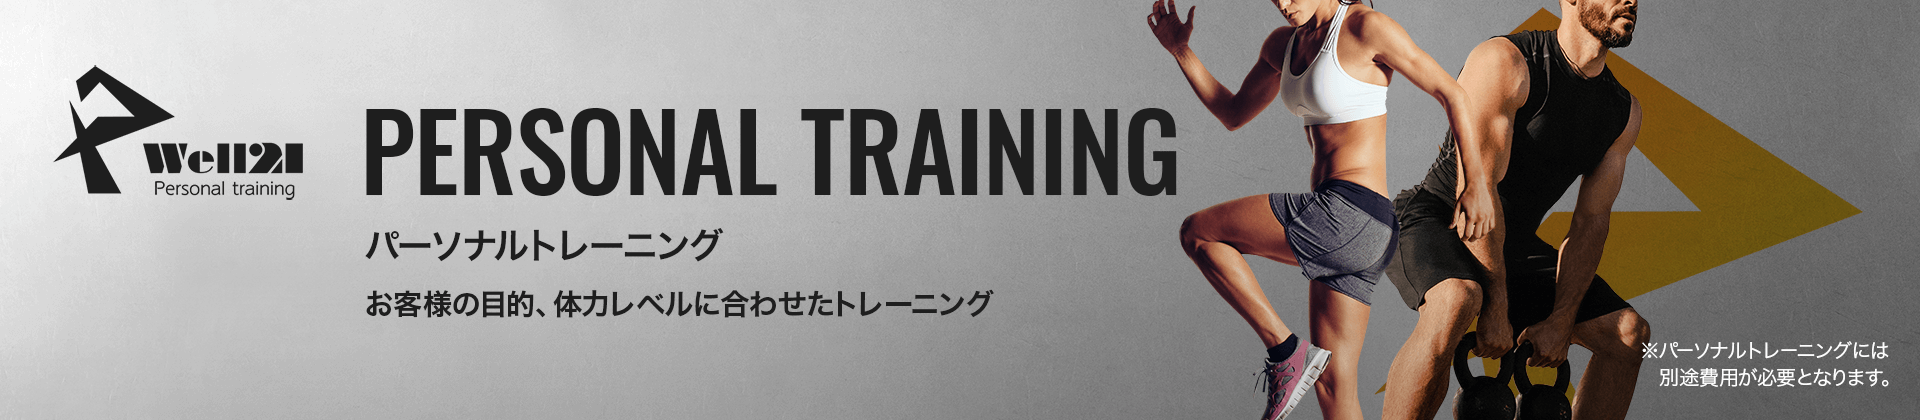 パーソナルトレーニング | お客様の目的、体力レベルに合わせたトレーニング